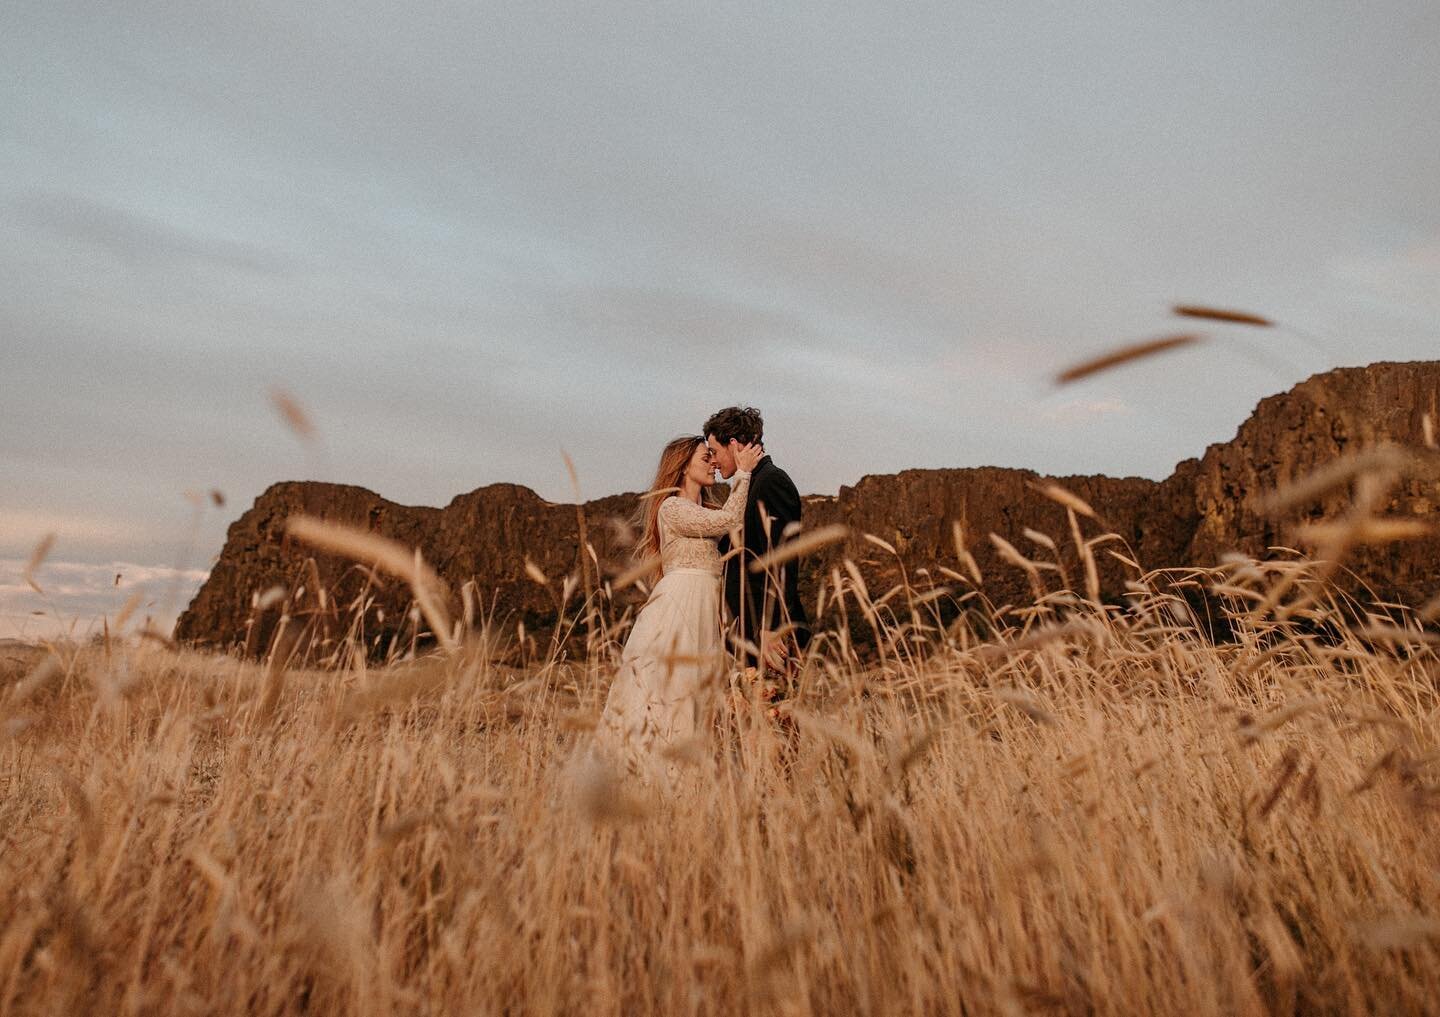 ✨Open fields, golden sunsets, and rocky cliffs &mdash; a beautiful elopement spot! 💛
.
.
.
.
.
.
.
.
.
.
#intimateweddingphotographer #elopementphotographer #travelelopementphotographer #oregonelopementphotographer #elopementideas #elopementphotos #